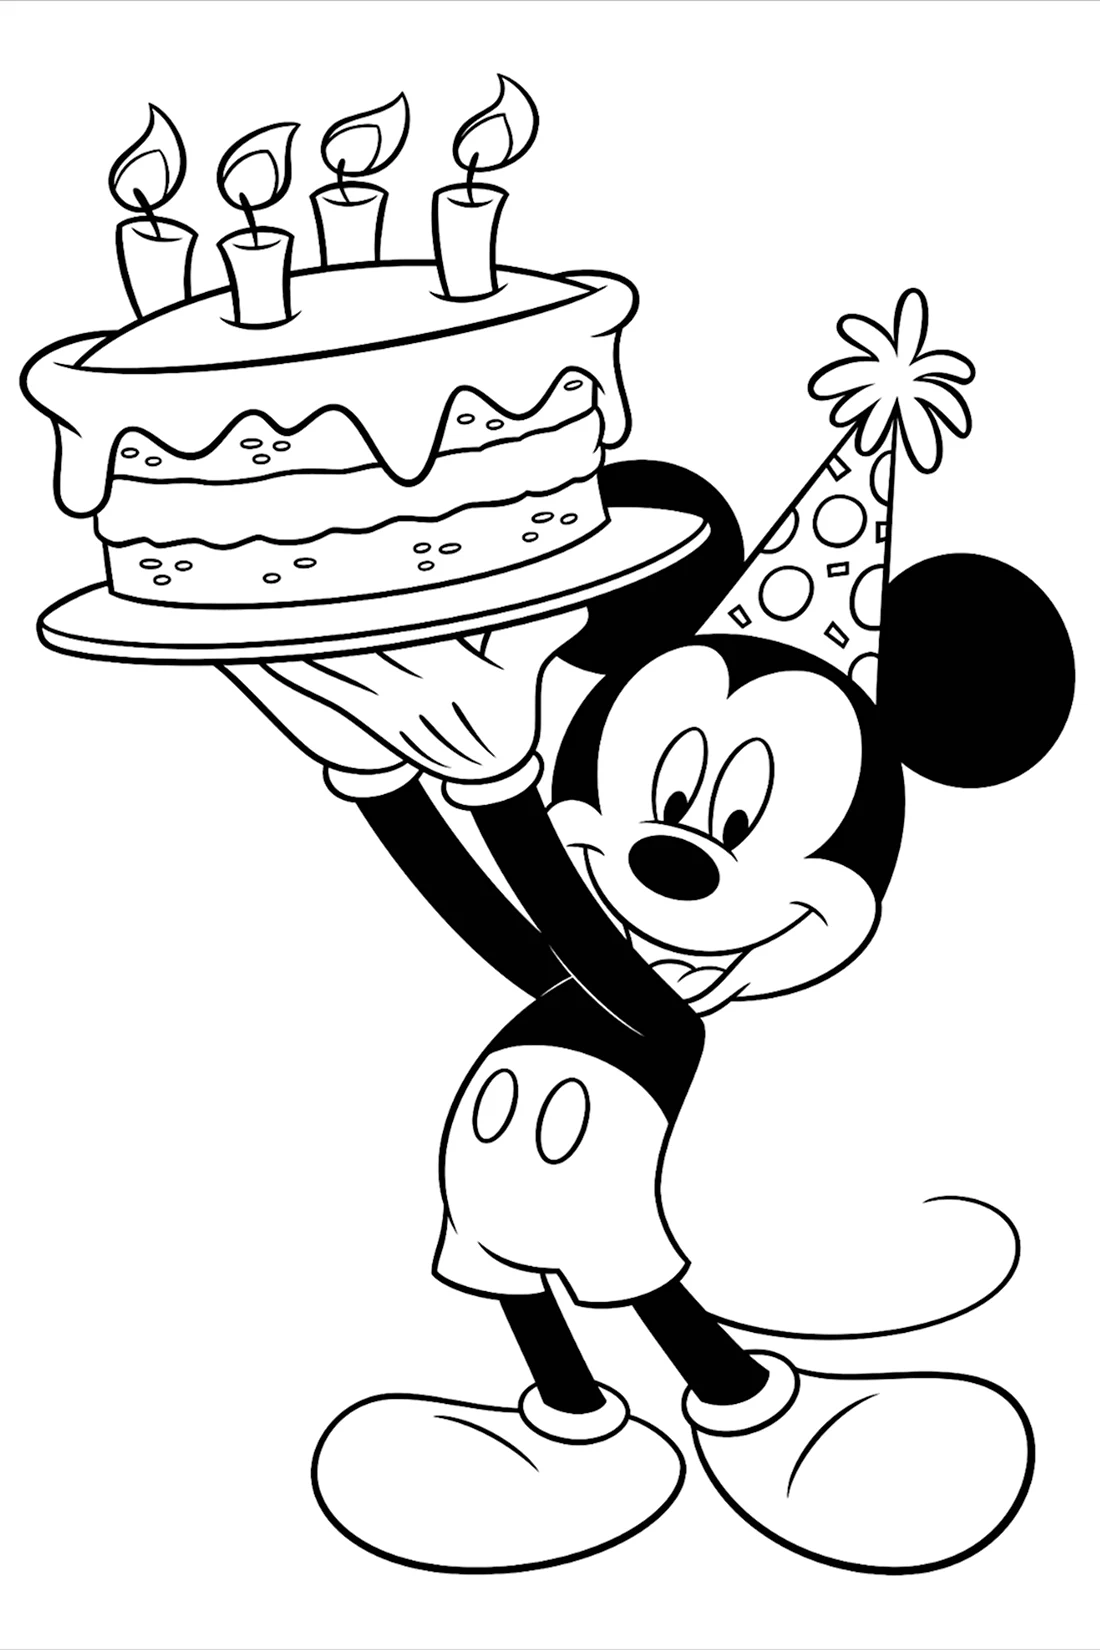 Микки Маус с днем рождения раскраска. Открытка для мужчины